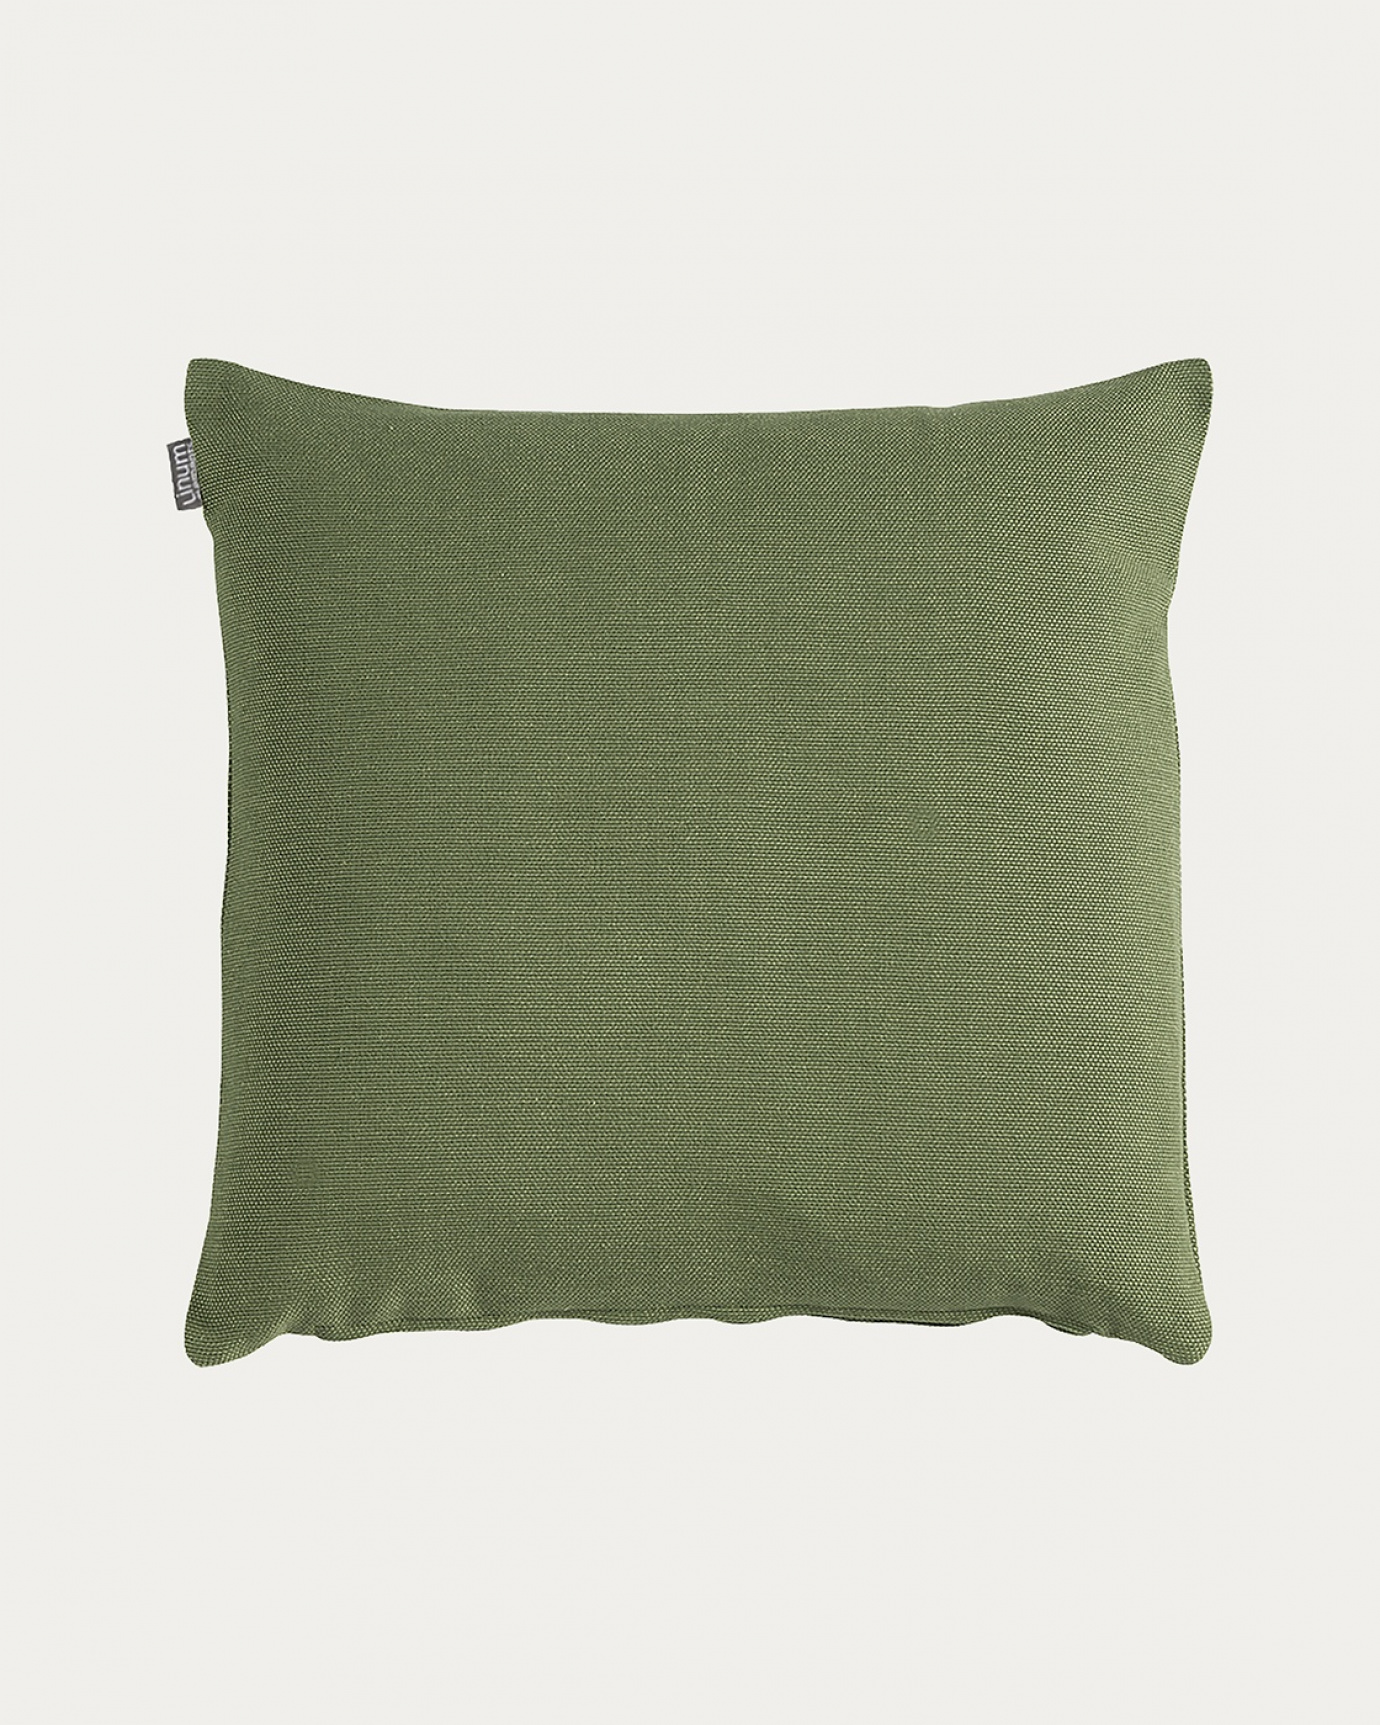 Image du produit housse de coussin PEPPER vert cyprès clair en coton doux de LINUM DESIGN. Facile à laver et durable pendant des générations. Taille 50 x 50 cm.